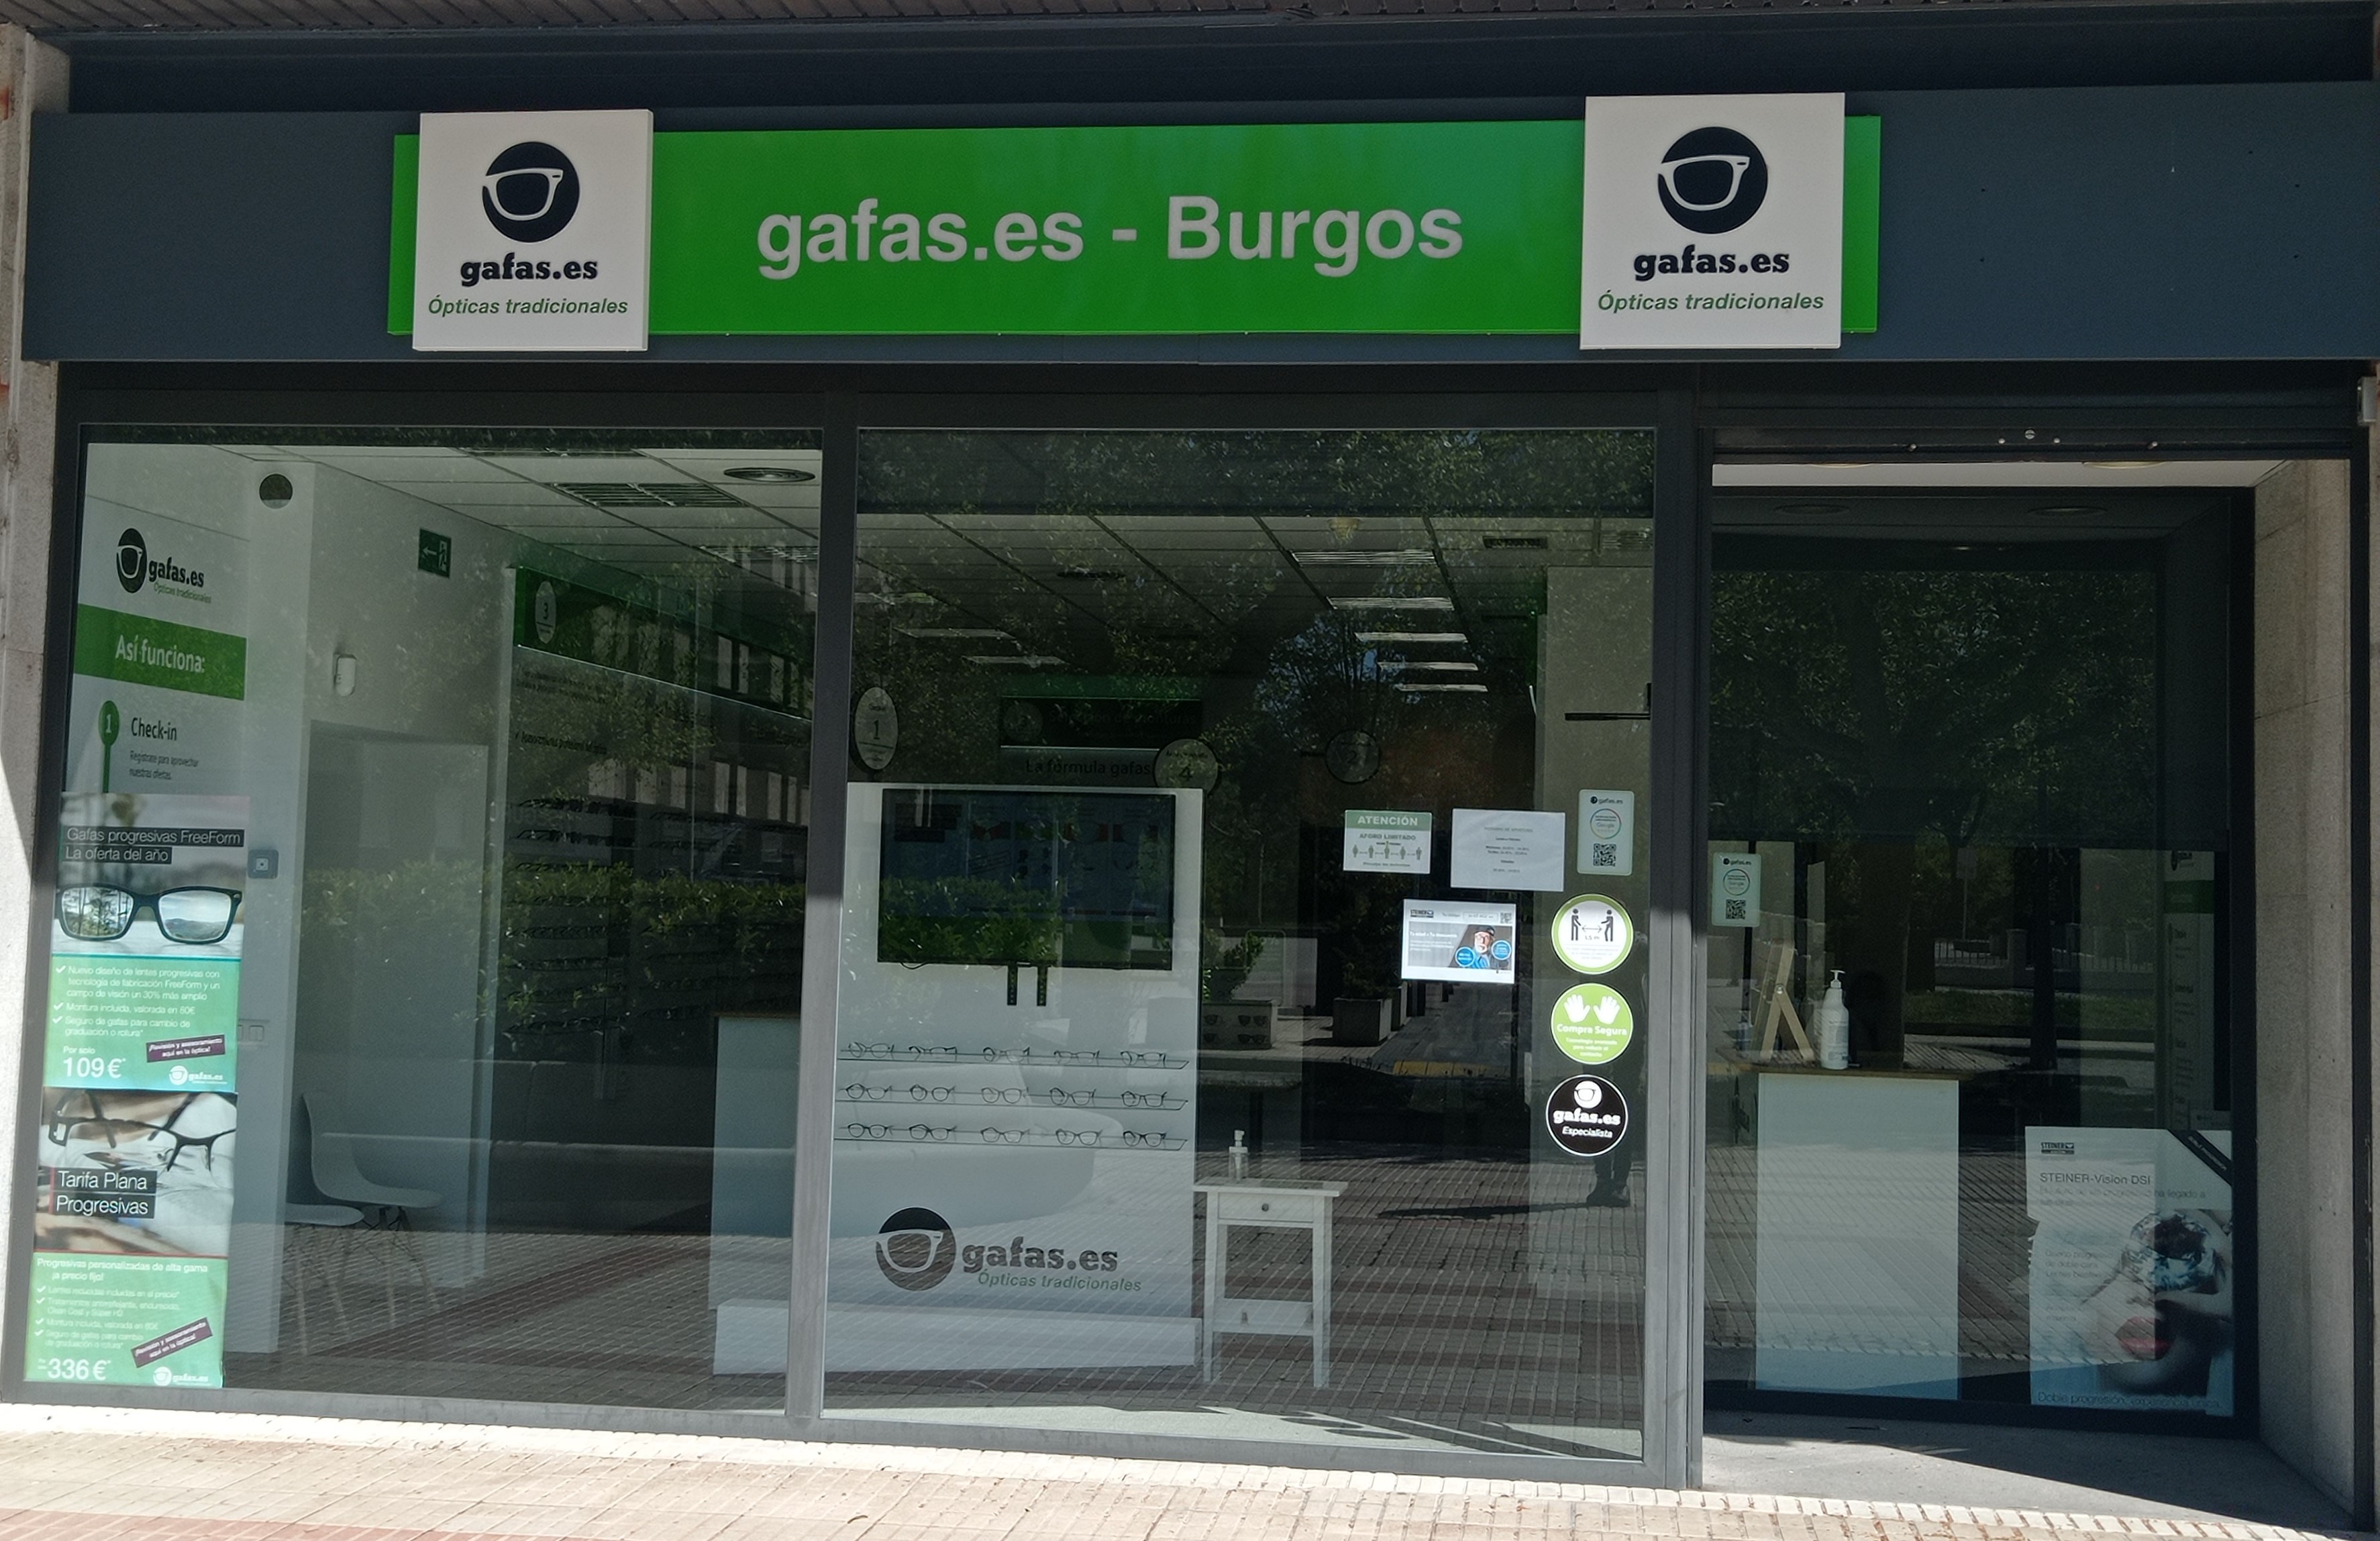 Gafas.es Burgos